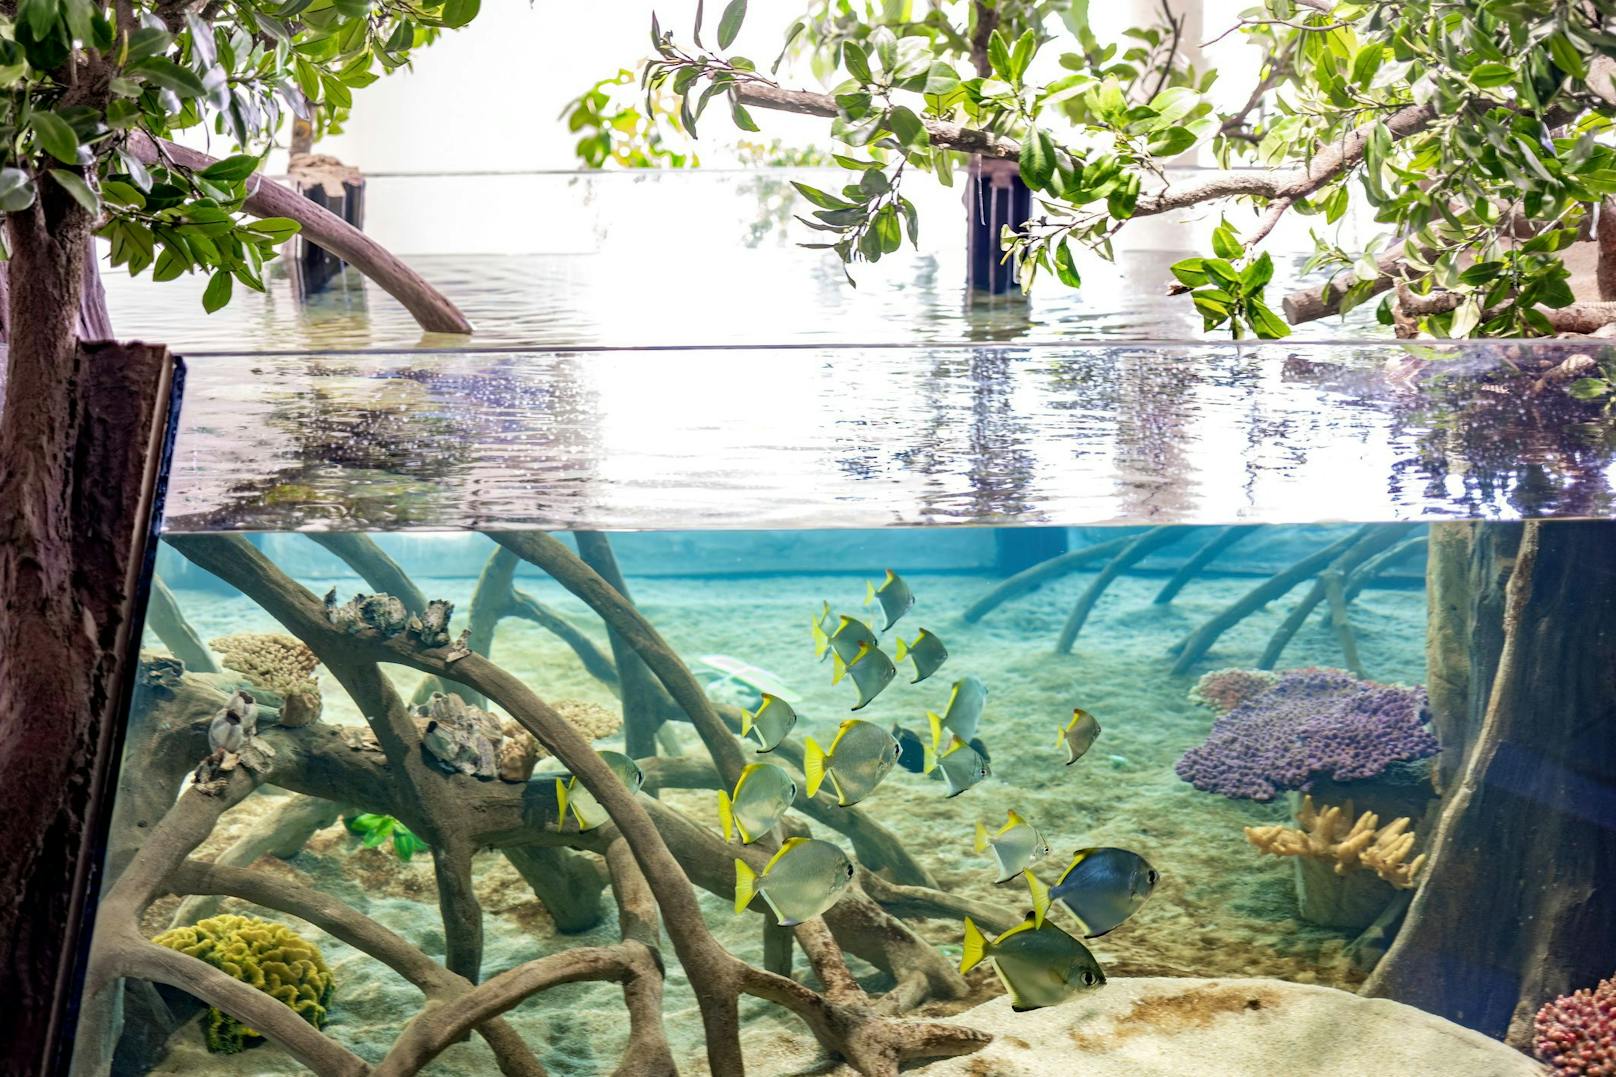 Haus des Meeres - in der Mangrovenanlage finden Tiere naturnahe Lebensbedingungen und Besucher erleben ein bisschen Tropenfeeling - 11 der 70 Mangrovenarten (16 Prozent) sind laut WWF in hohem Maße vom Aussterben bedroht